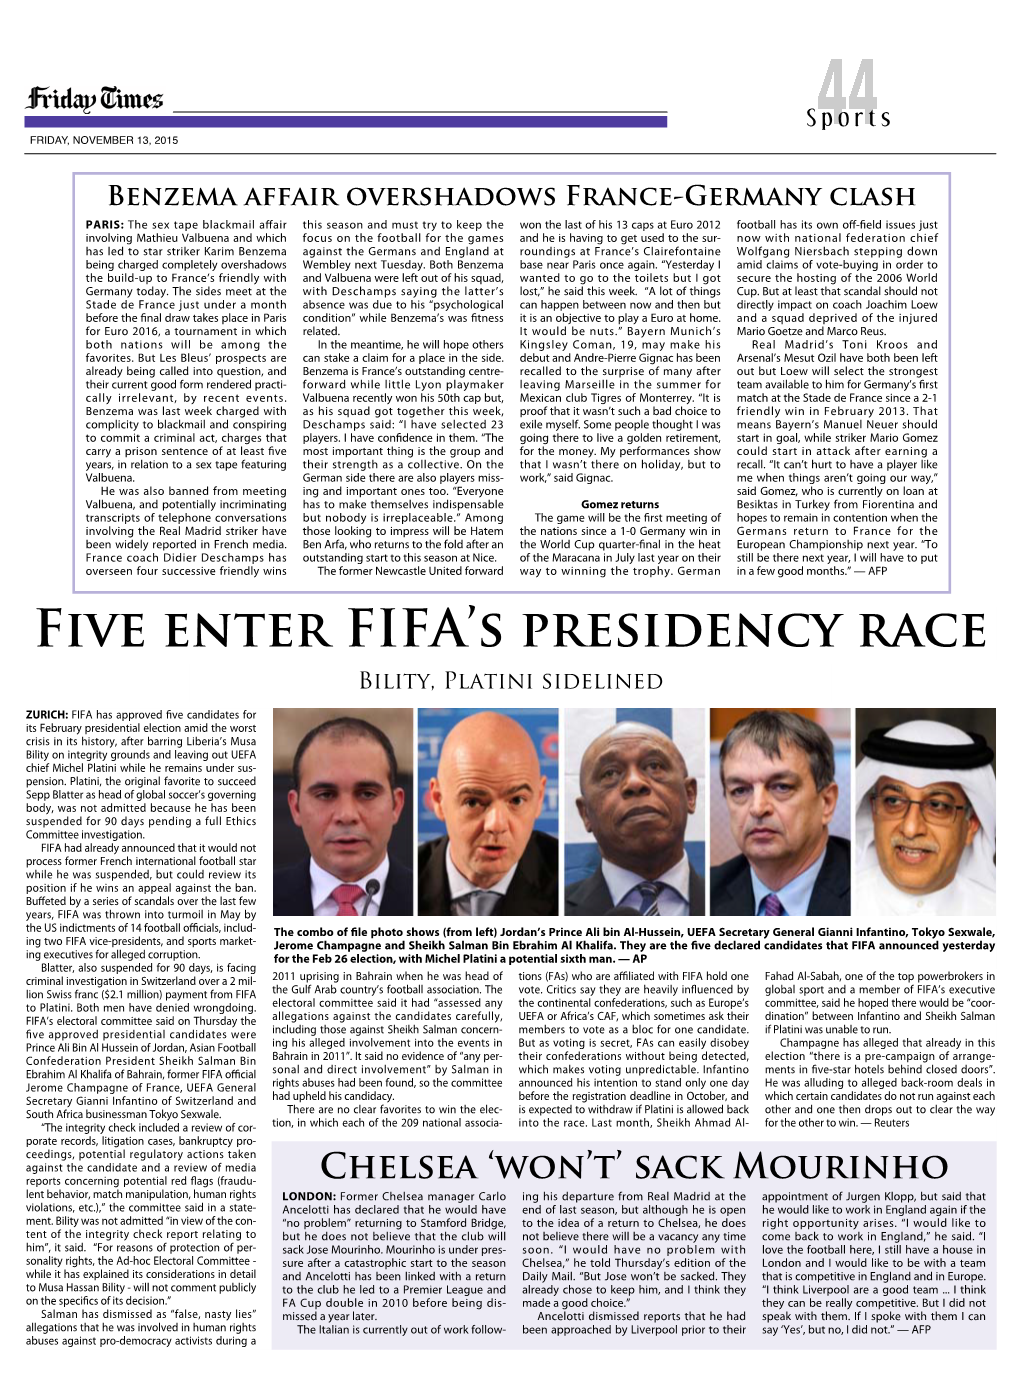 Five ENTER FIFA's Presidency Race